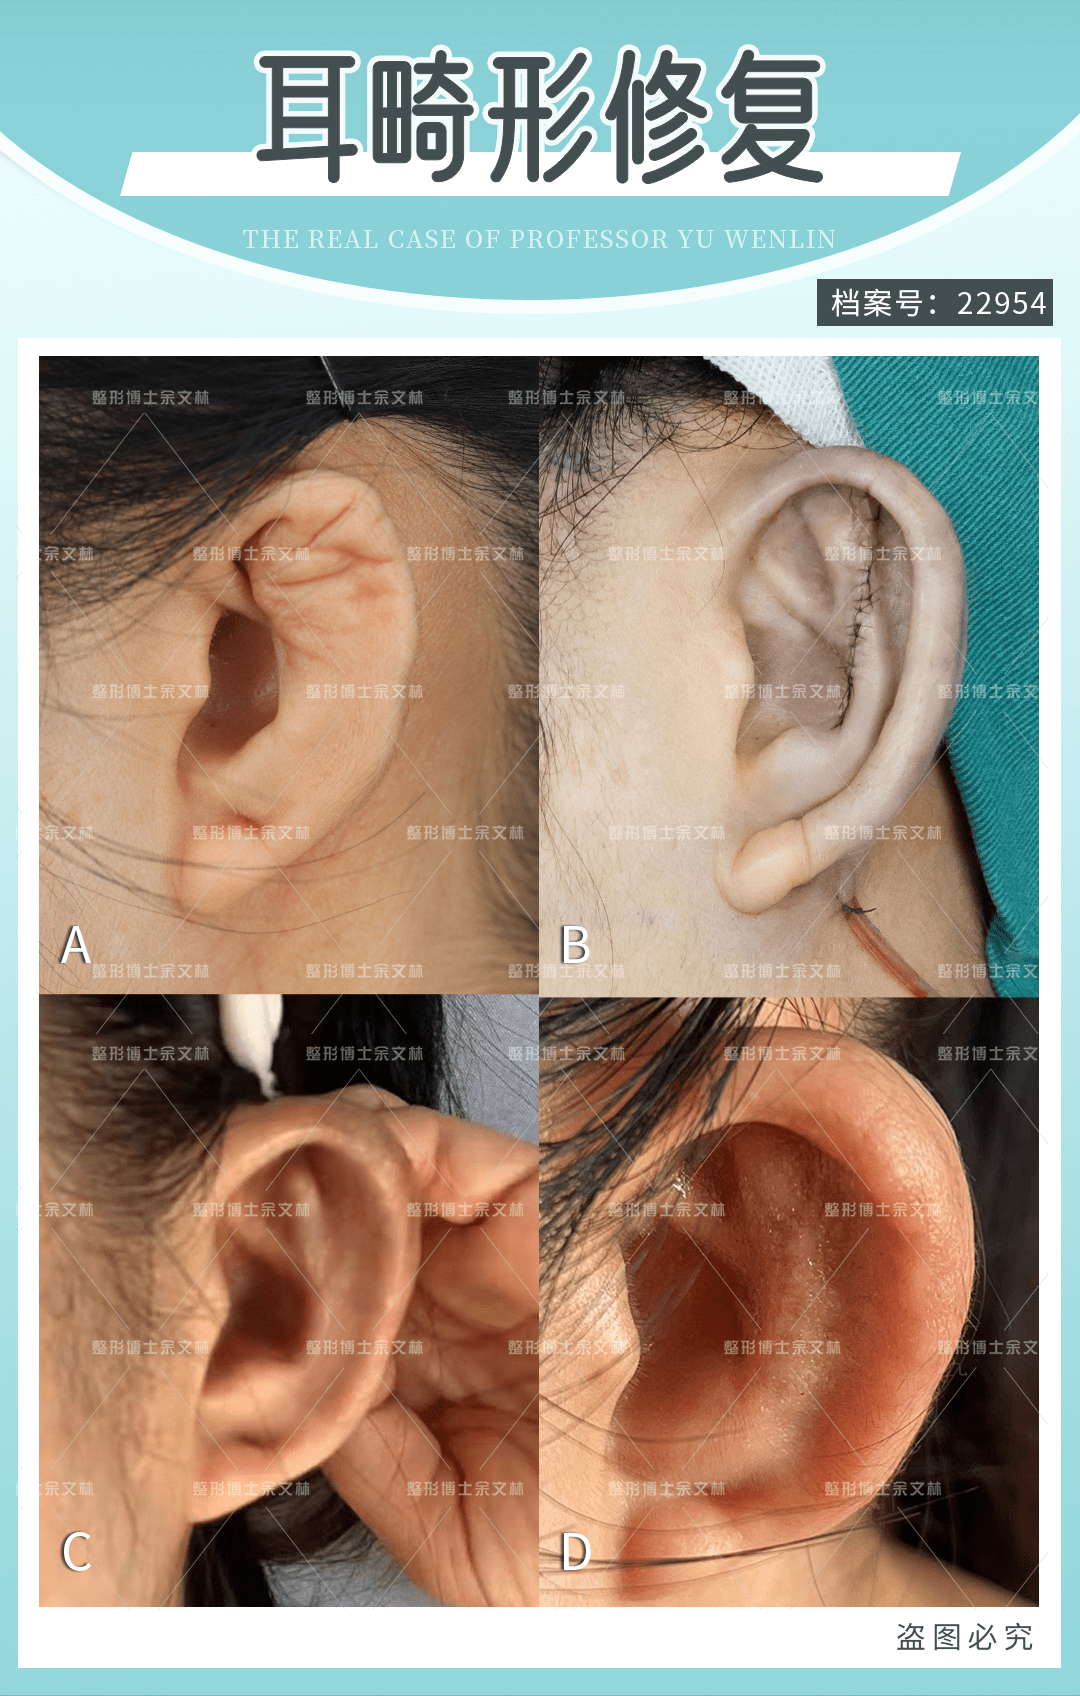 案例分析小姐姐的左边耳软骨取太多了现在左耳缩成小小一个